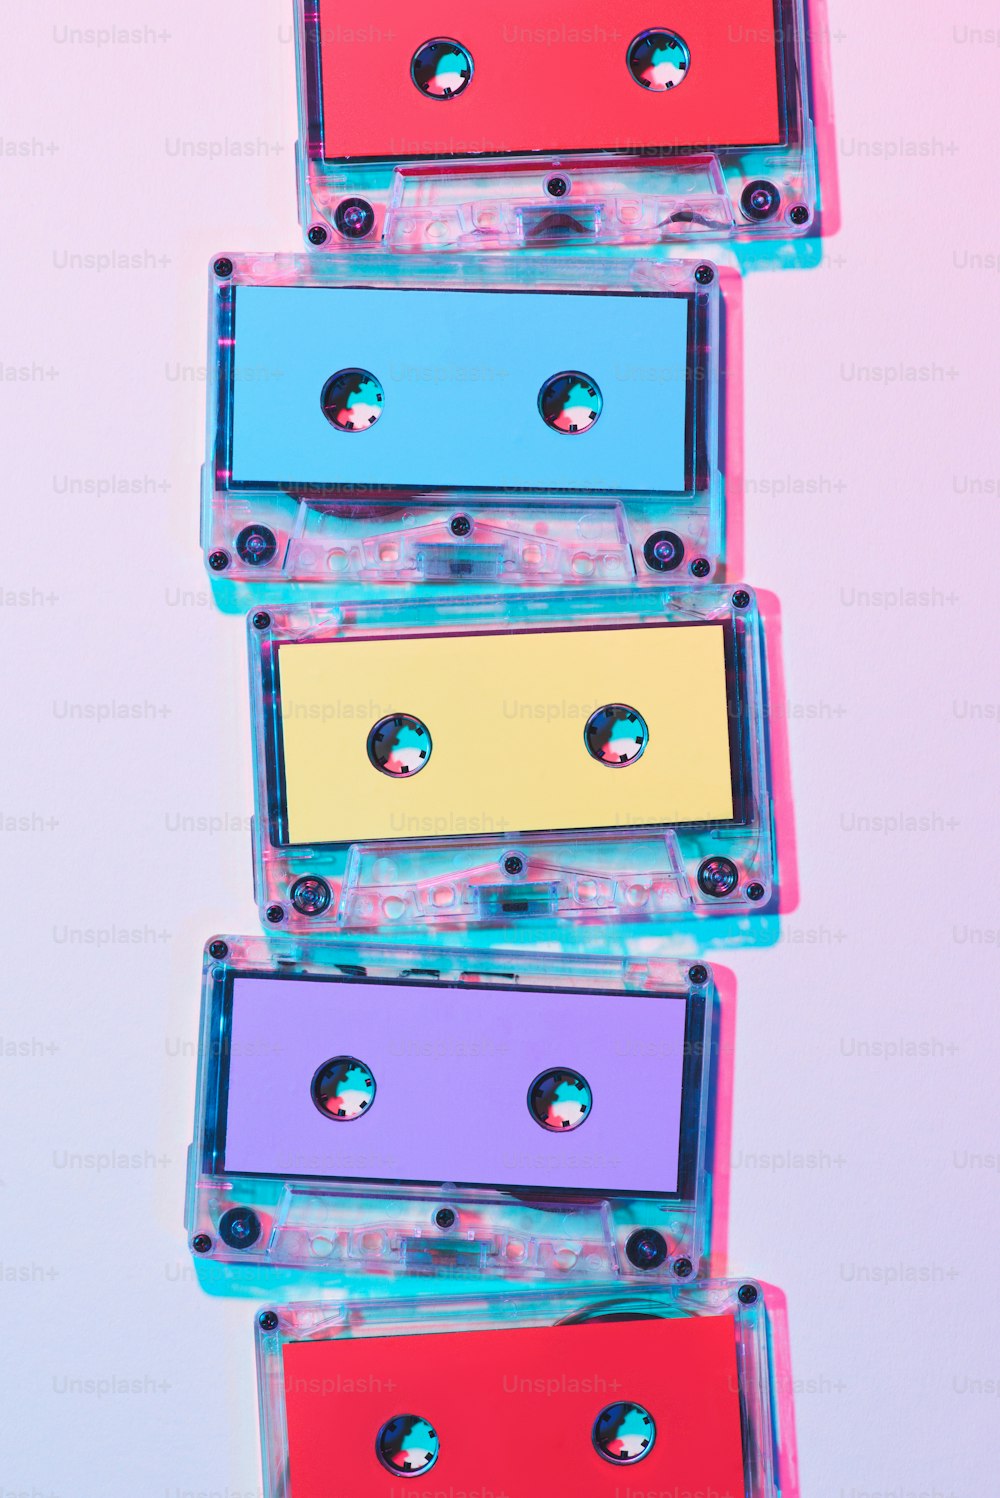 보라색 배경에 배열된 다채로운 오디오 카세트의 평면도